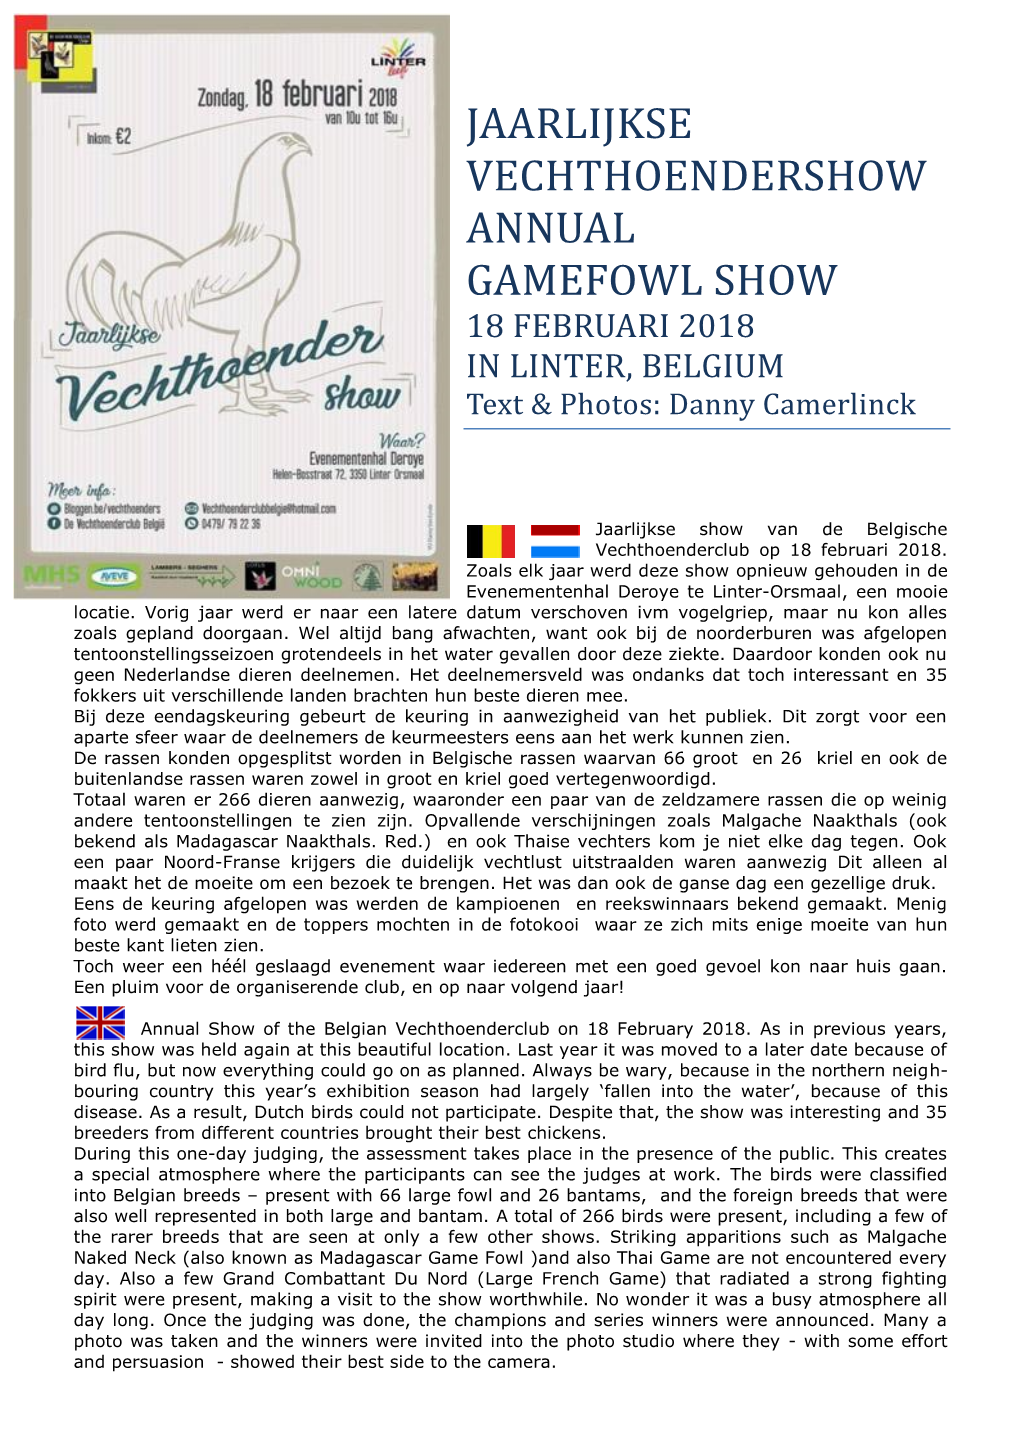 JAARLIJKSE VECHTHOENDERSHOW ANNUAL GAMEFOWL SHOW 18 FEBRUARI 2018 in LINTER, BELGIUM Text & Photos: Danny Camerlinck